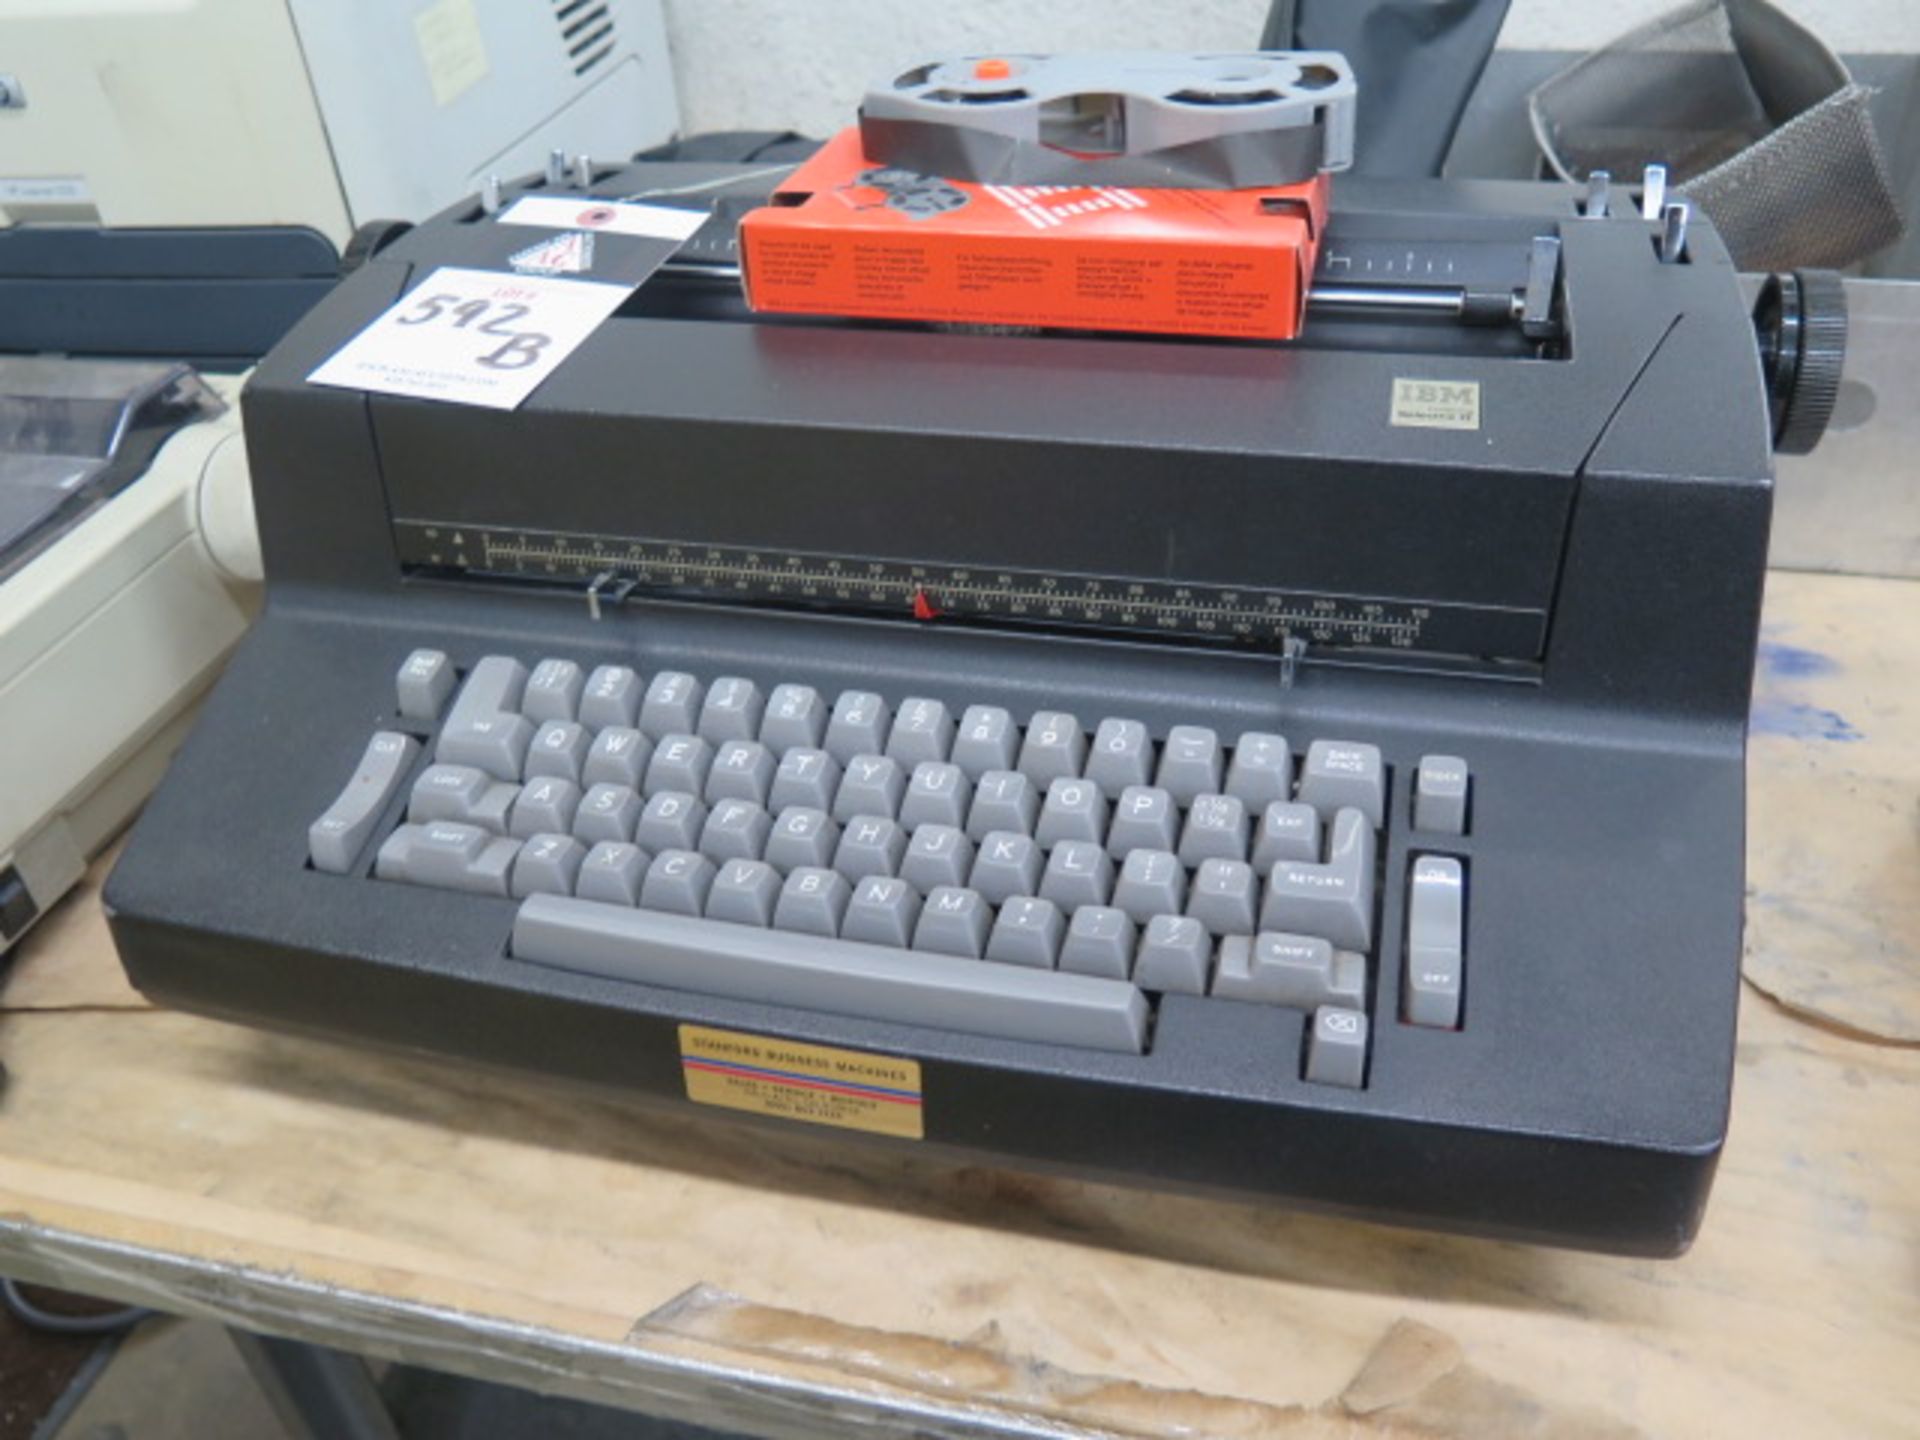 IBM Typewriter, HP Printer and Panasonic Dot-Matrix Printer (SOLD AS-IS - NO WARRANTY) - Image 2 of 4